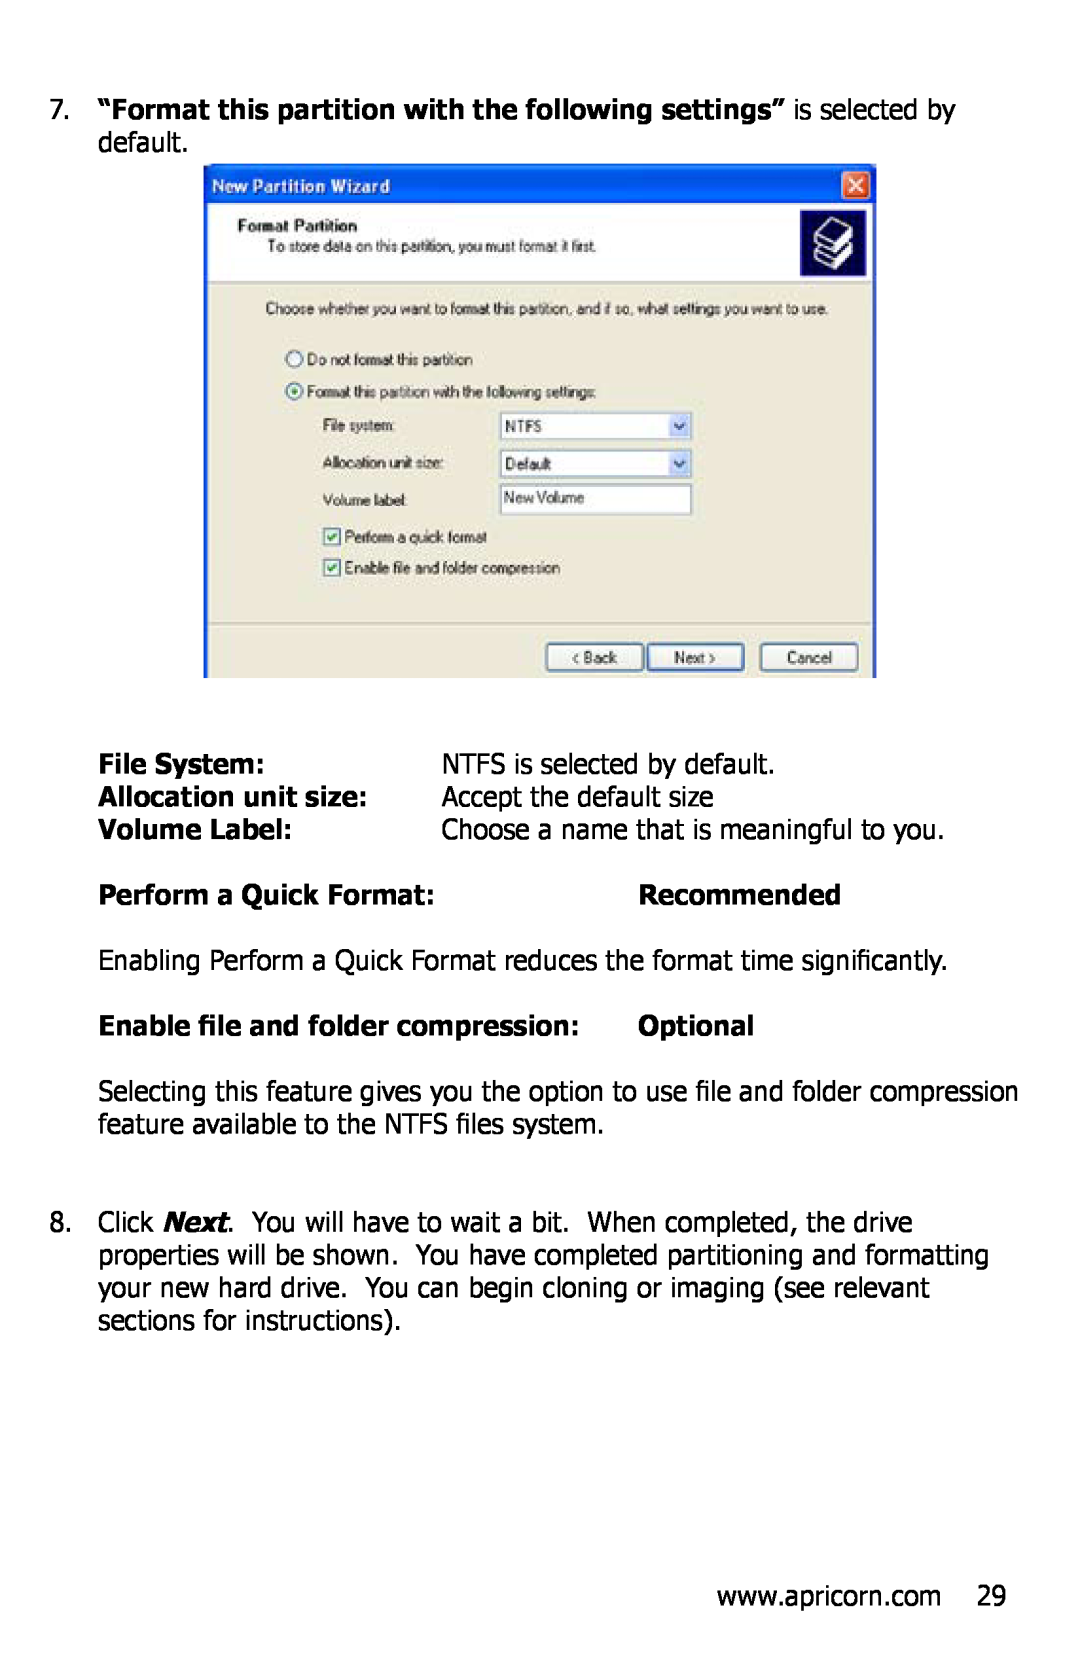 Apricorn EZ Bus DTS File System, NTFS is selected by default, Allocation unit size, Accept the default size, Volume Label 